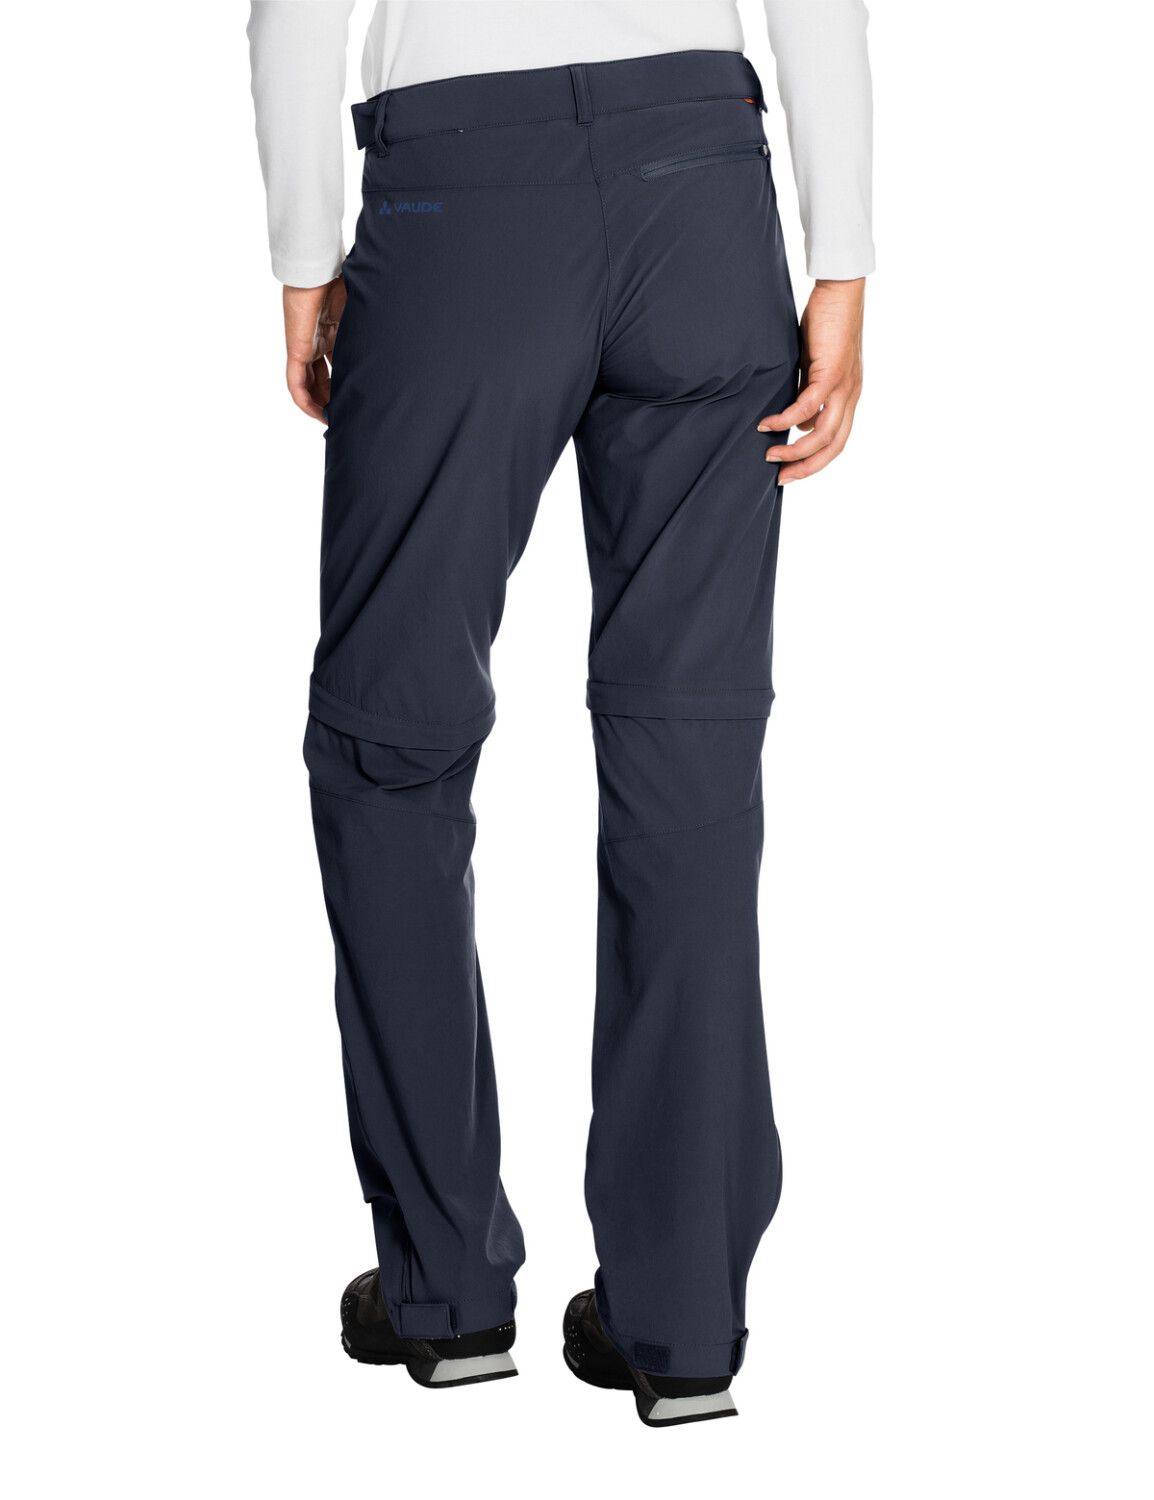 VAUDE Women's Farley Stretch ZO T-Zip Pants (Bild 45)